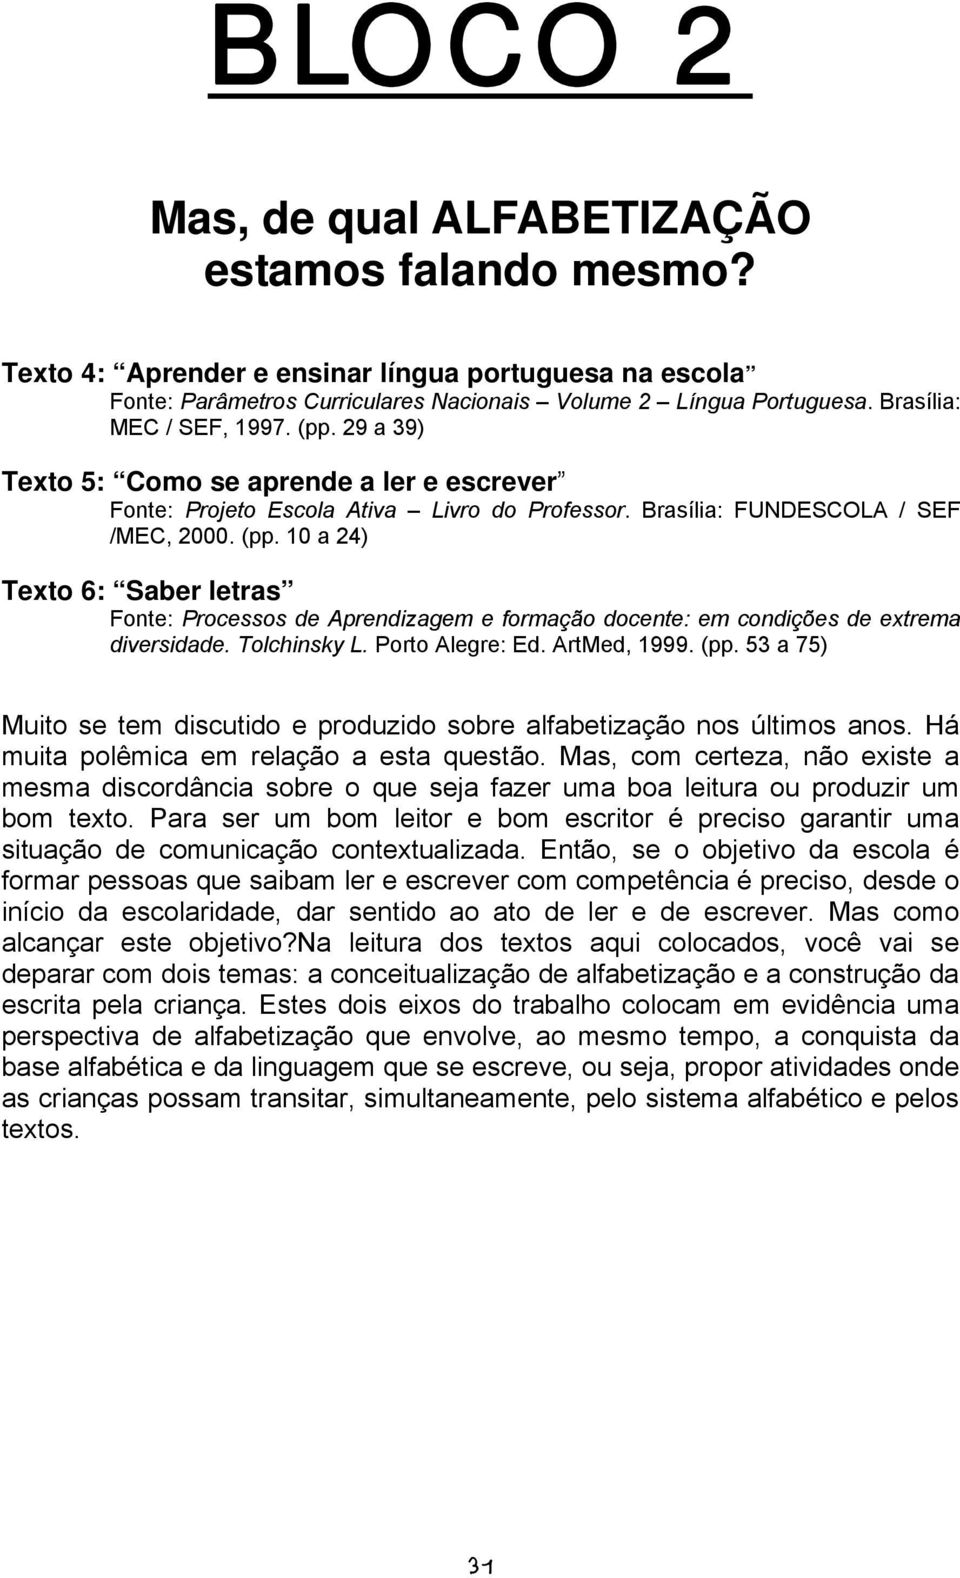 Tolchinsky L. Porto Alegre: Ed. ArtMed, 1999. (pp. 53 a 75) Muito se tem discutido e produzido sobre alfabetização nos últimos anos. Há muita polêmica em relação a esta questão.